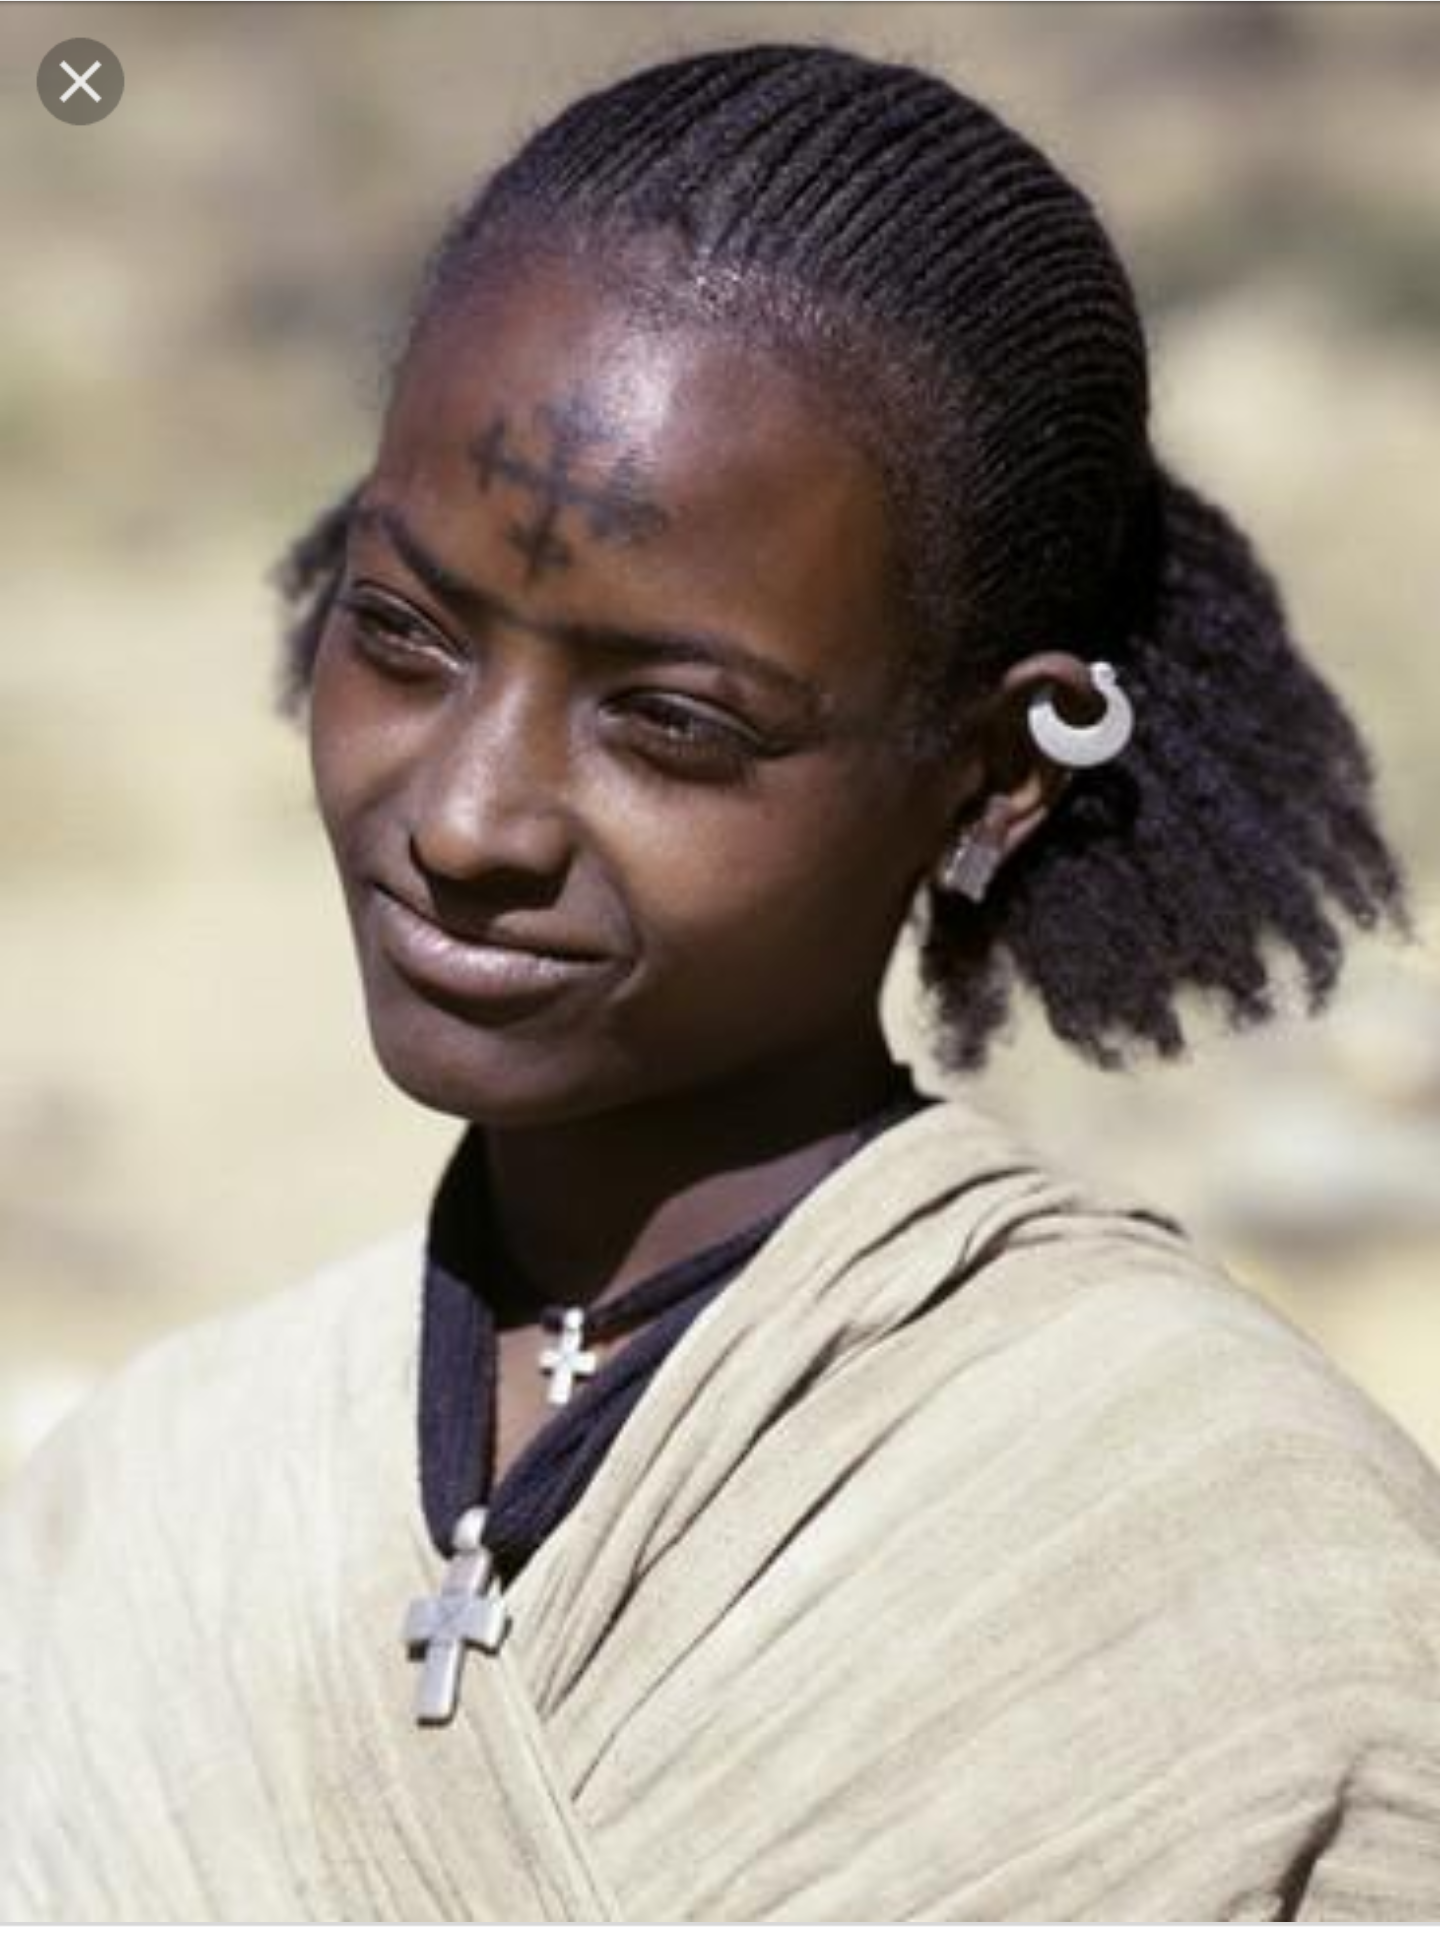 Губы негроидной расы. Абиссинцы эфиопы. Амхара Эфиопия. Амхара семиты. Африканцы негроидная раса.